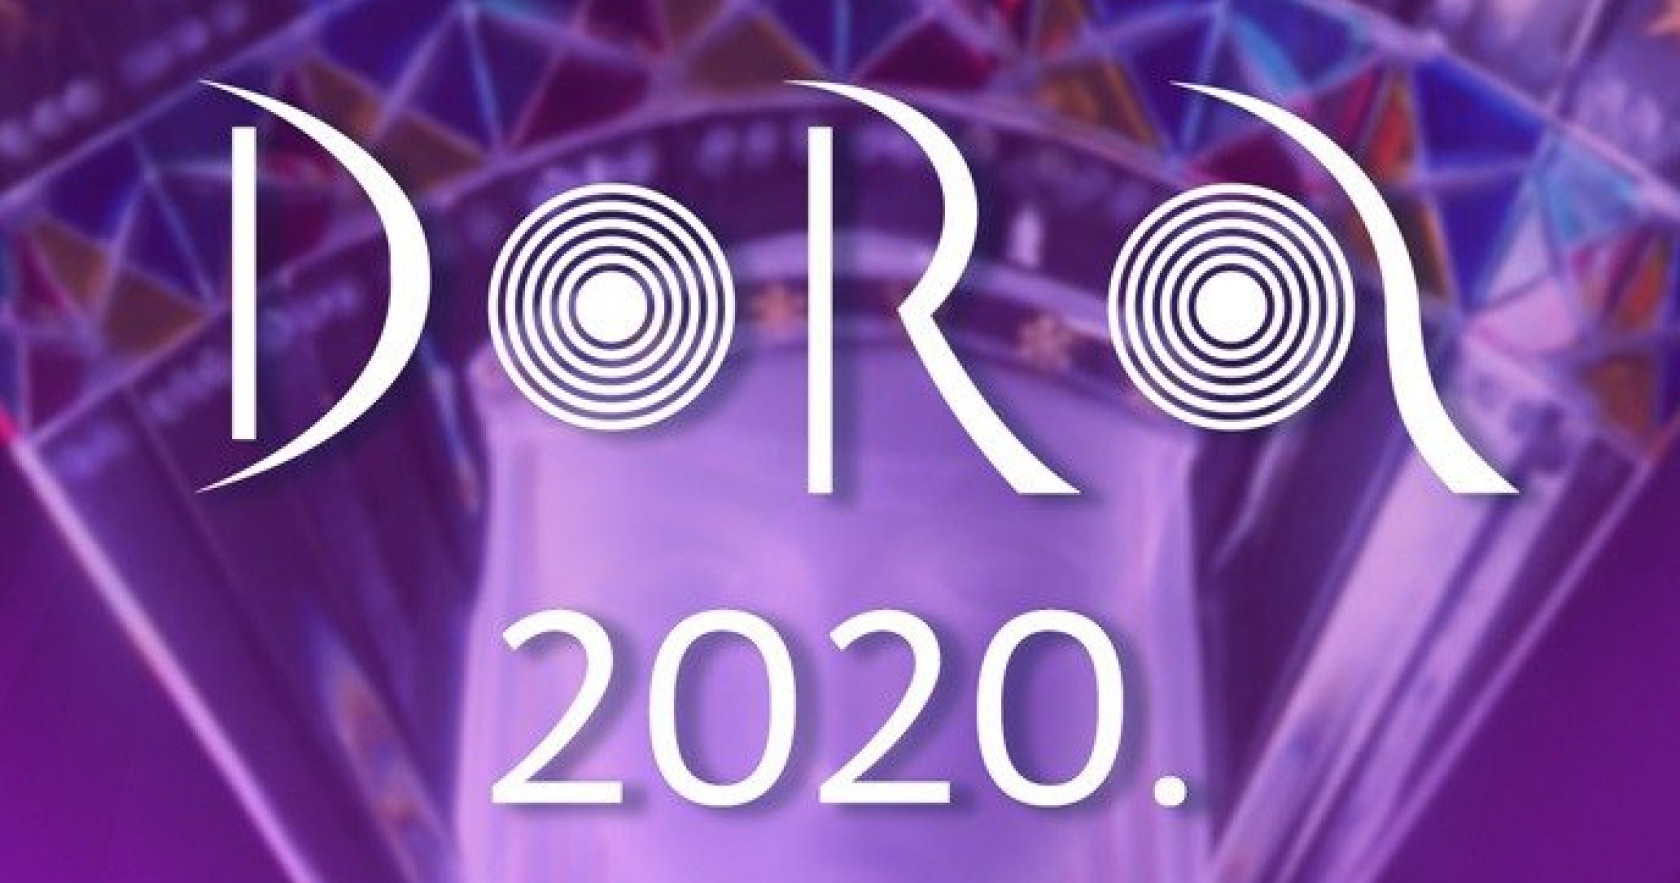 Κροατία: Ακούστε τα αποσπάσματα των τραγουδιών του Dora 2020